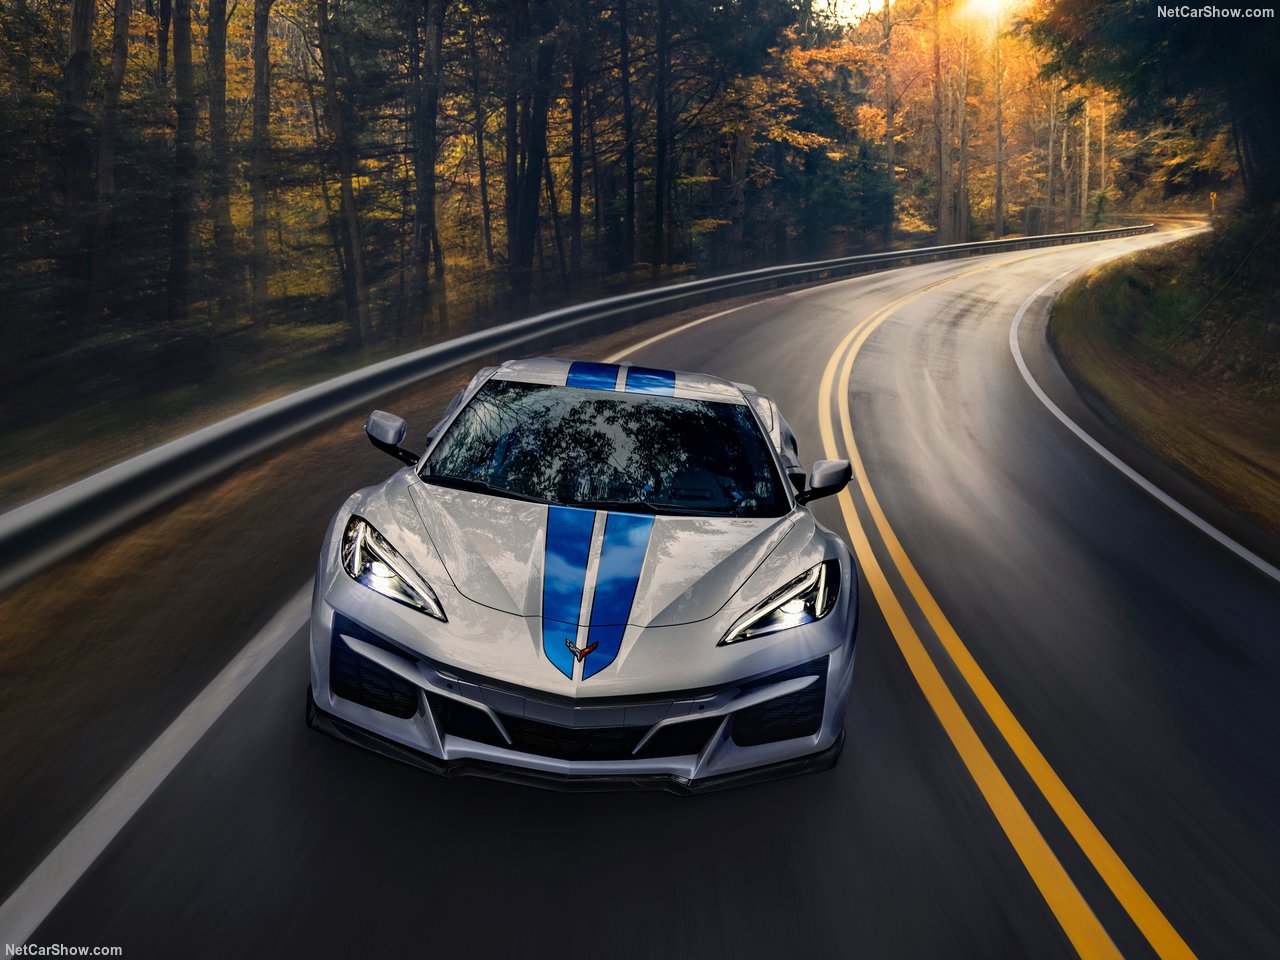 Чтобы отличить новинку от электрифицированного Corvette, был установлен новый передний бампер в стиле Z06, а задняя часть была изменена, чтобы гармонировать с более широким кузовом. Также доступны новые цвета, уникальные для E-Ray, наряду с внешней и